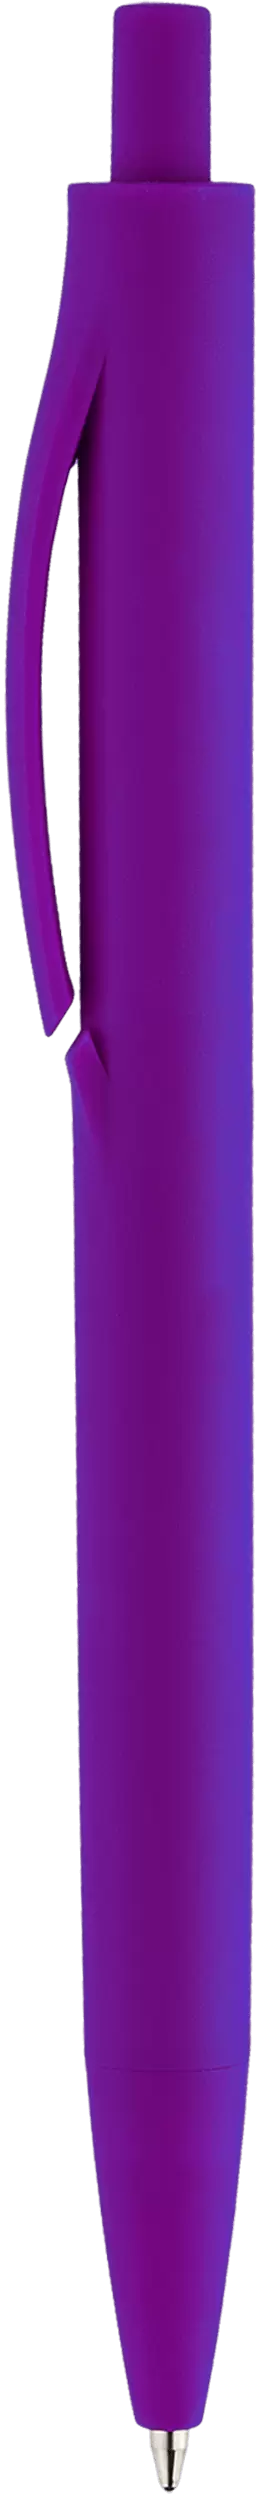 Ручка IGLA SOFT Фиолетовая 1030.11